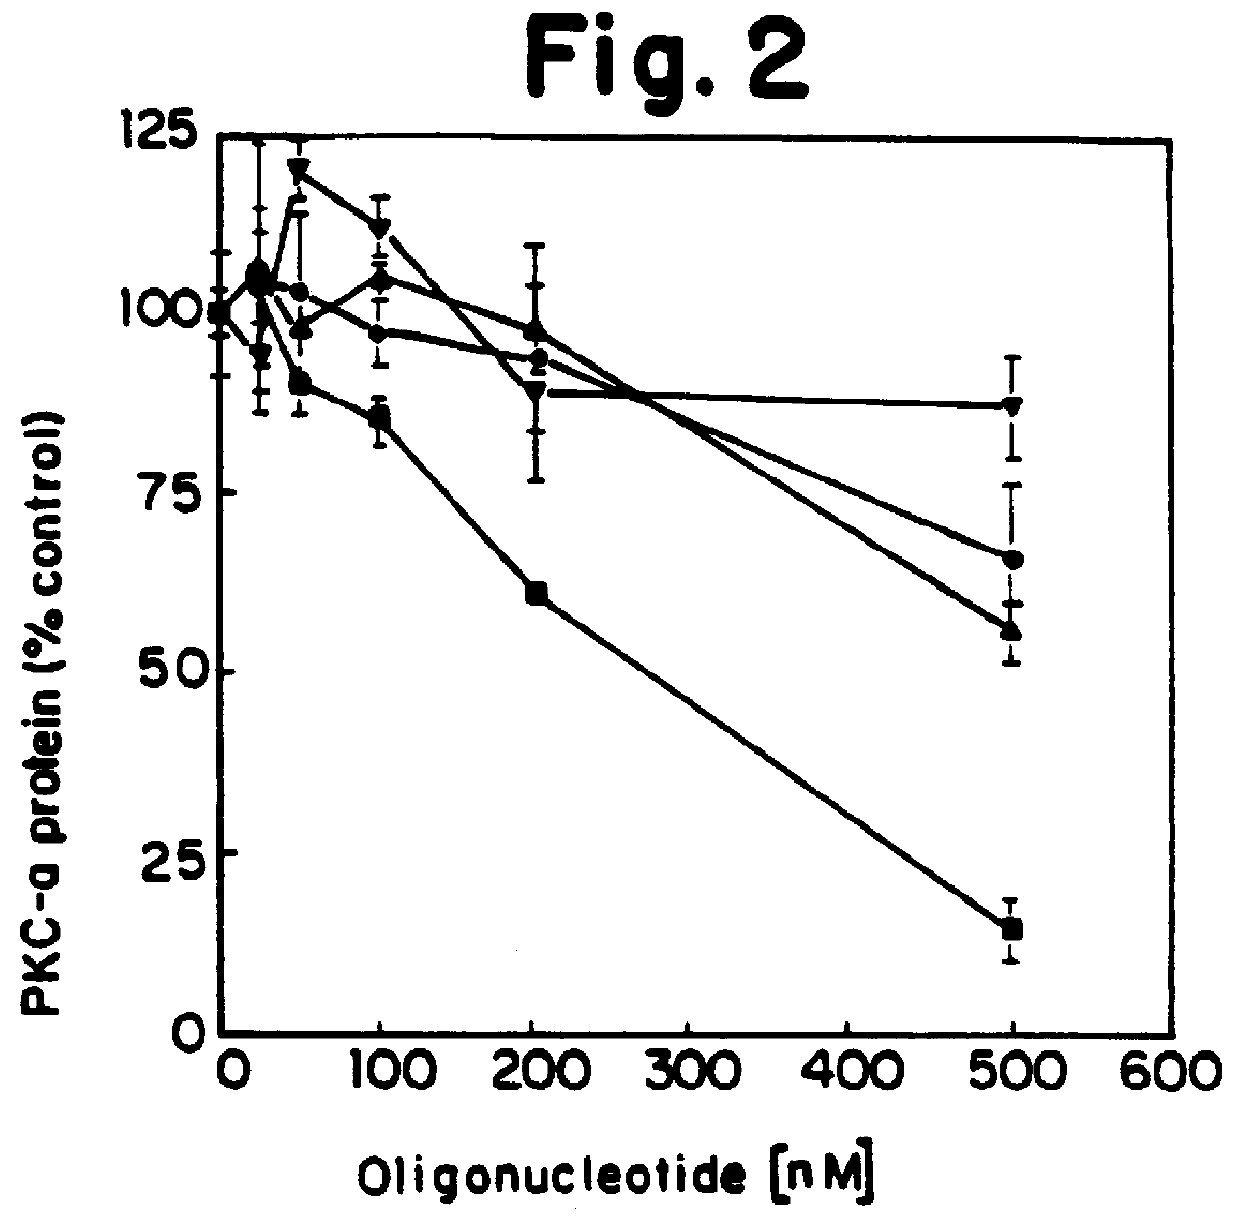 Oligonucleotide modulation of protein kinase C